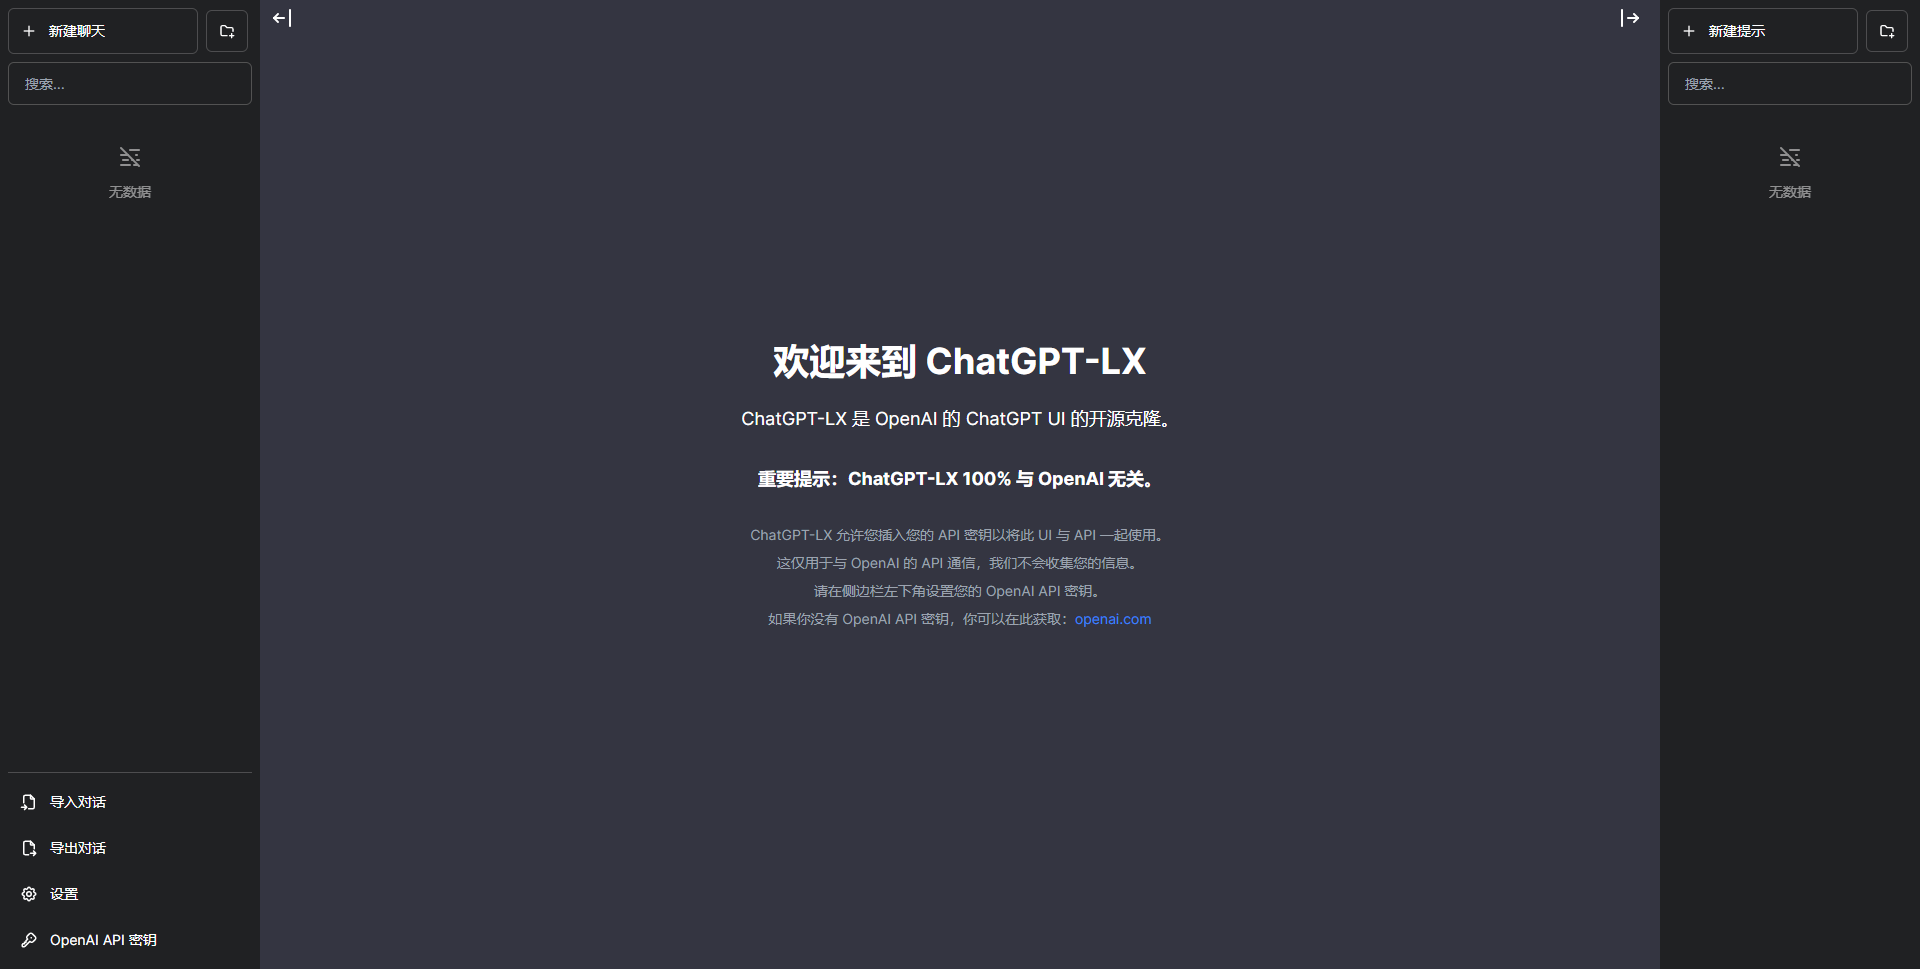 ChatGPT-LX